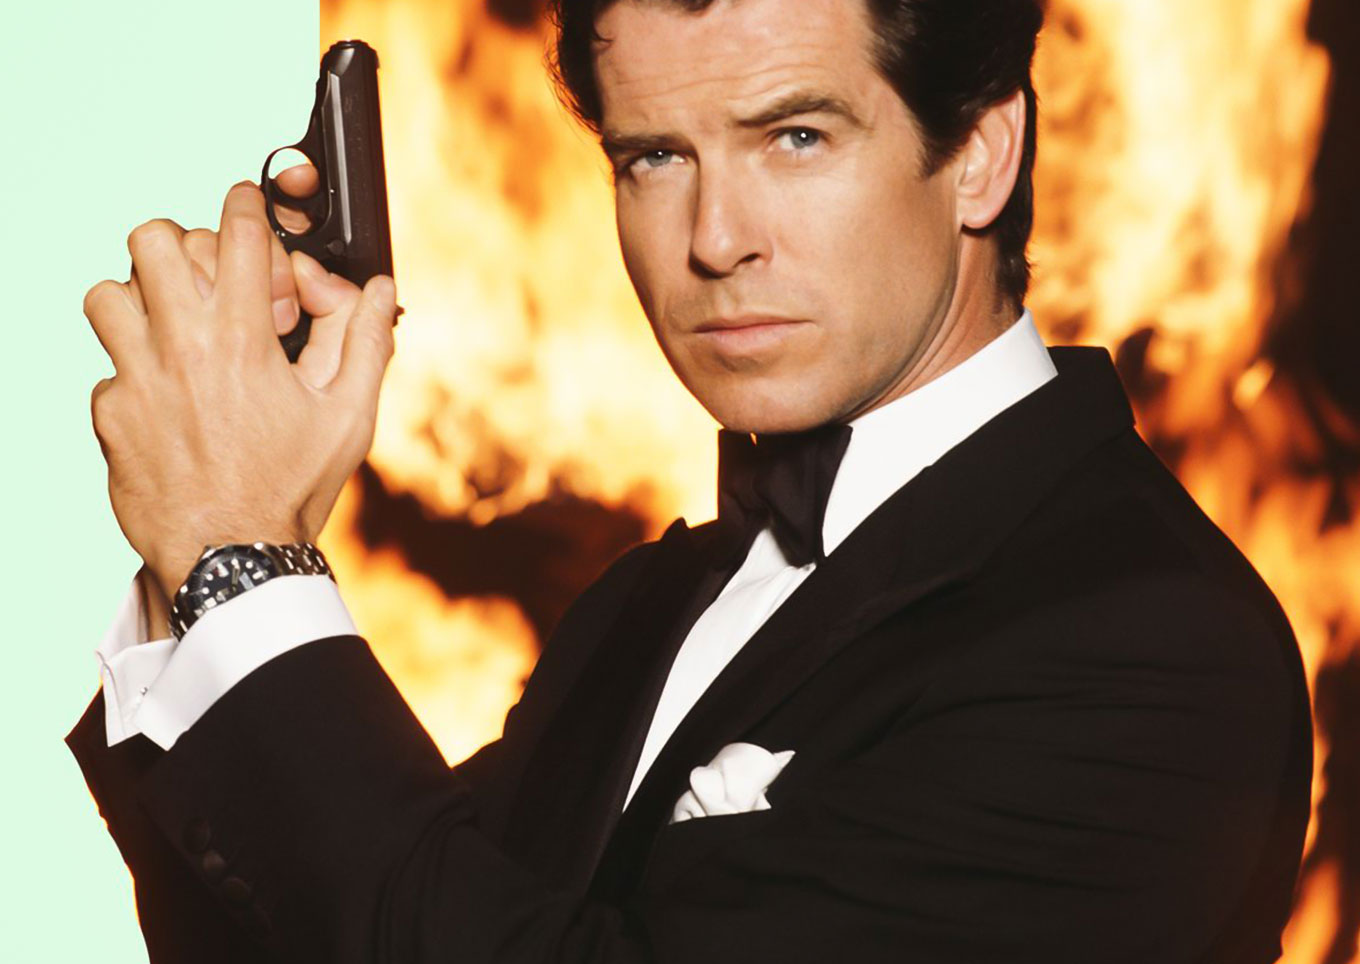 Pierce Brosnan as James Bond wearing an Omega Seamaster 300M